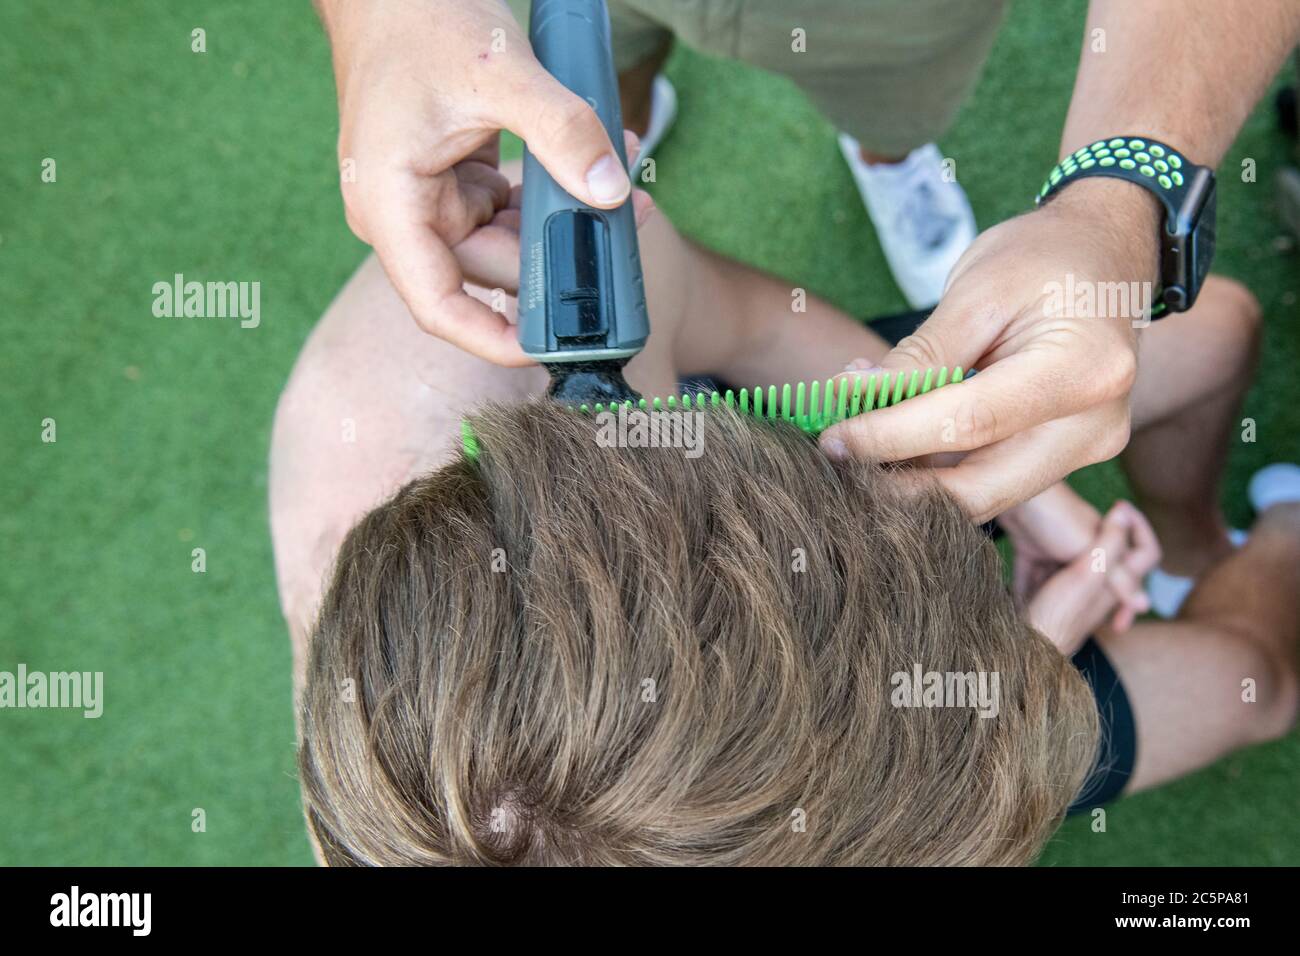 Un corte de pelo cerrado para un niño adolescente en el jardín Foto de stock